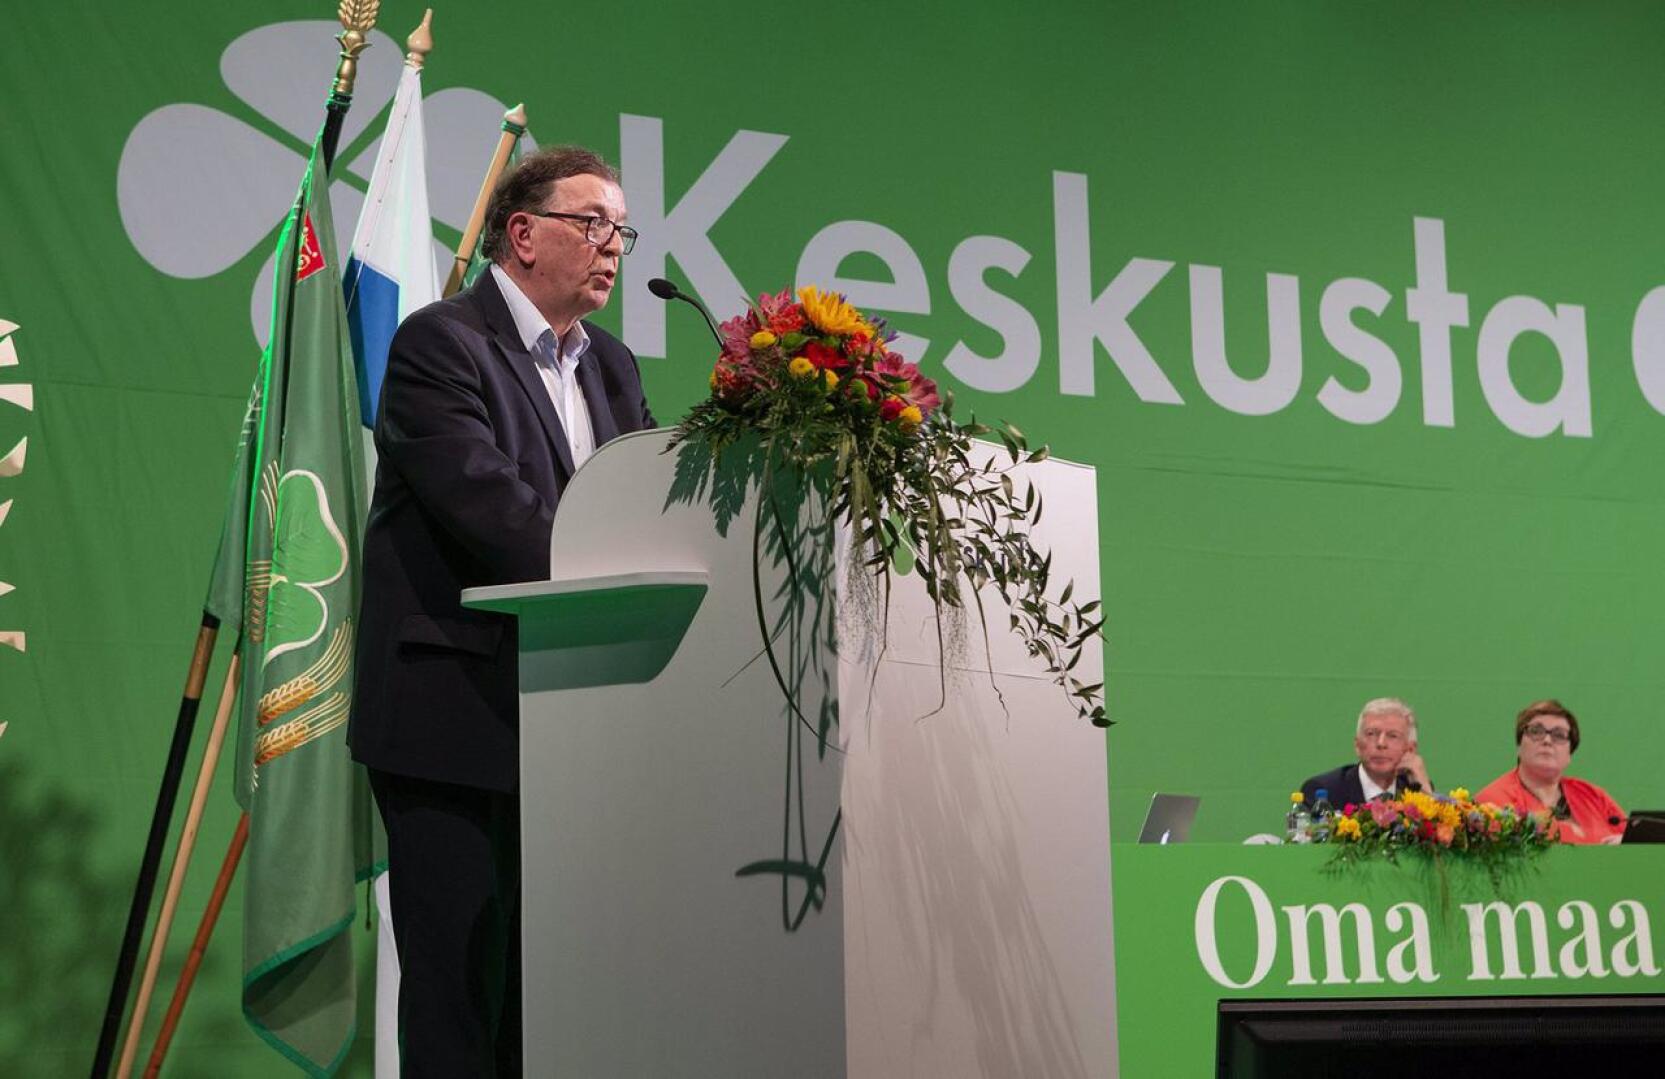 Paavo Väyrynen on puolueensa entinen puheenjohtaja ja entinen kunniapuheenjohtaja, joka riitautui viime vuosikymmenellä puolueensa kanssa.